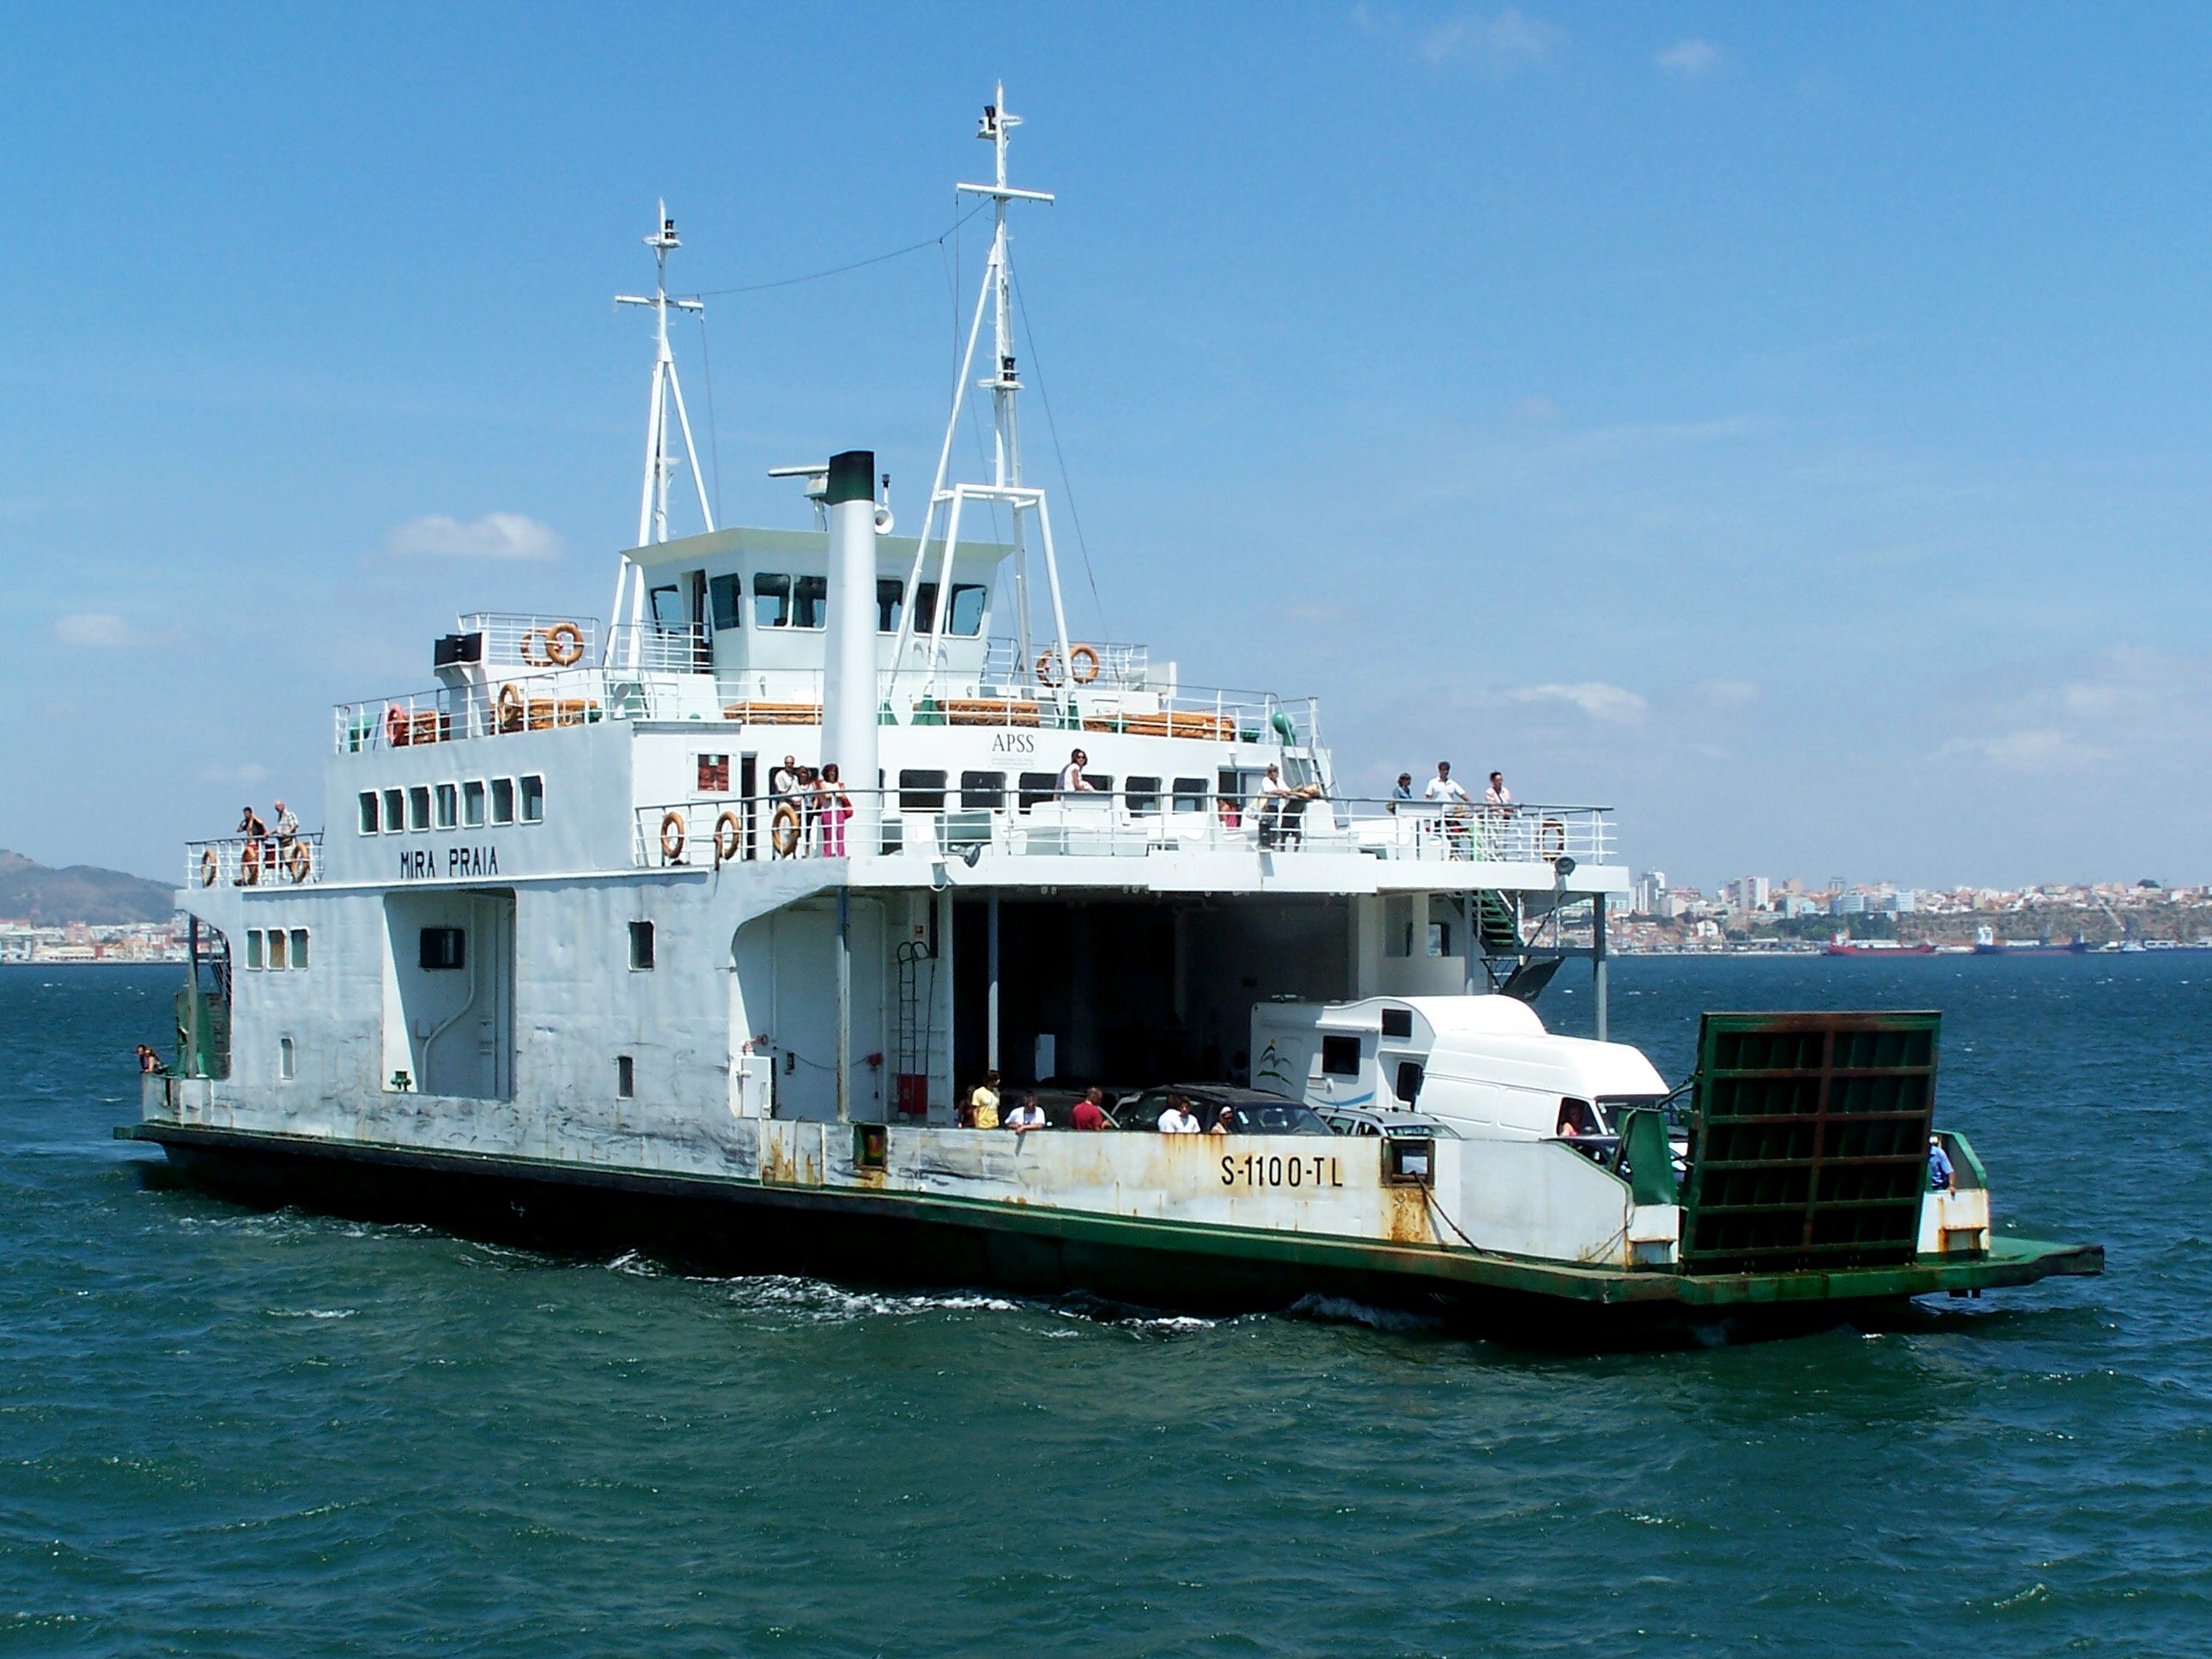 File:Ferry-Boat de Setúbal-Tróia II.jpg - Wikimedia Commons